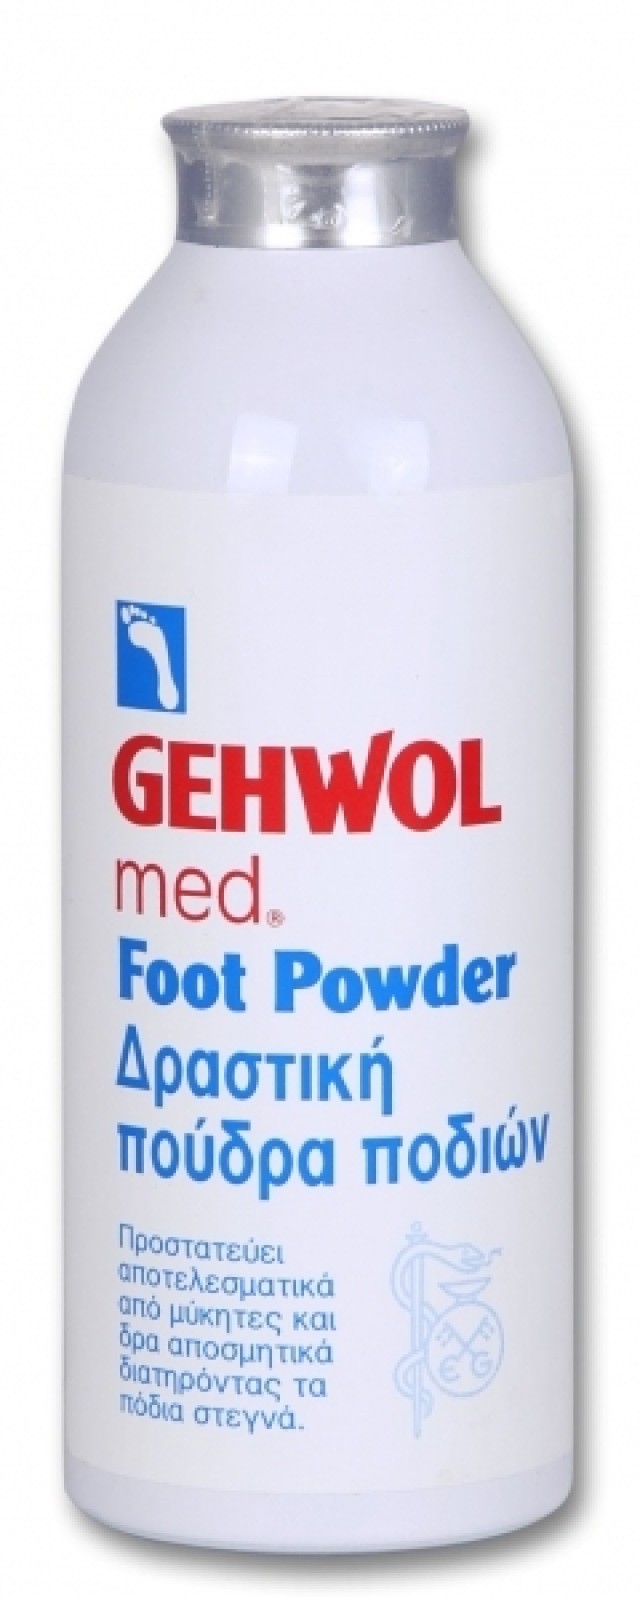 GEHWOL MED FOOT POWDER 100gr